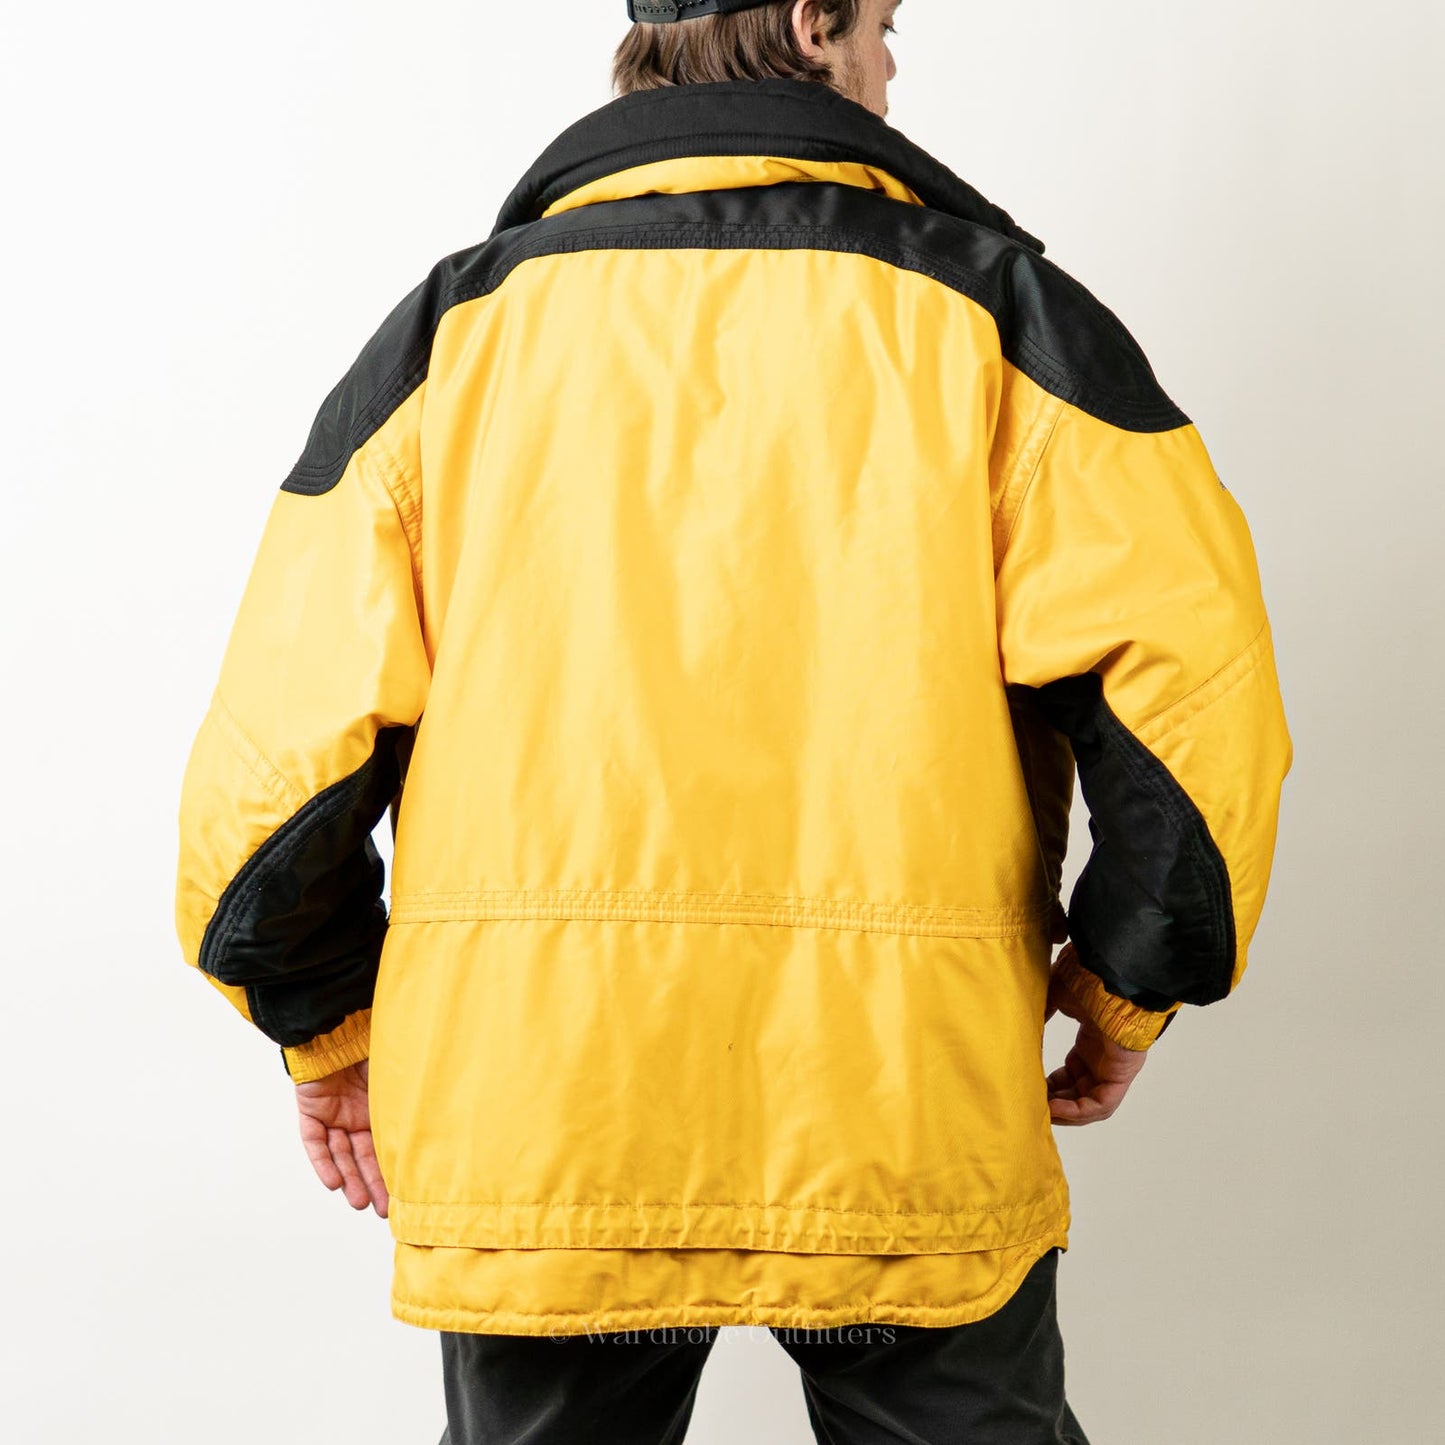 Vintage 90s Puffer Ski Jacket Coat Parka by Descente - XL